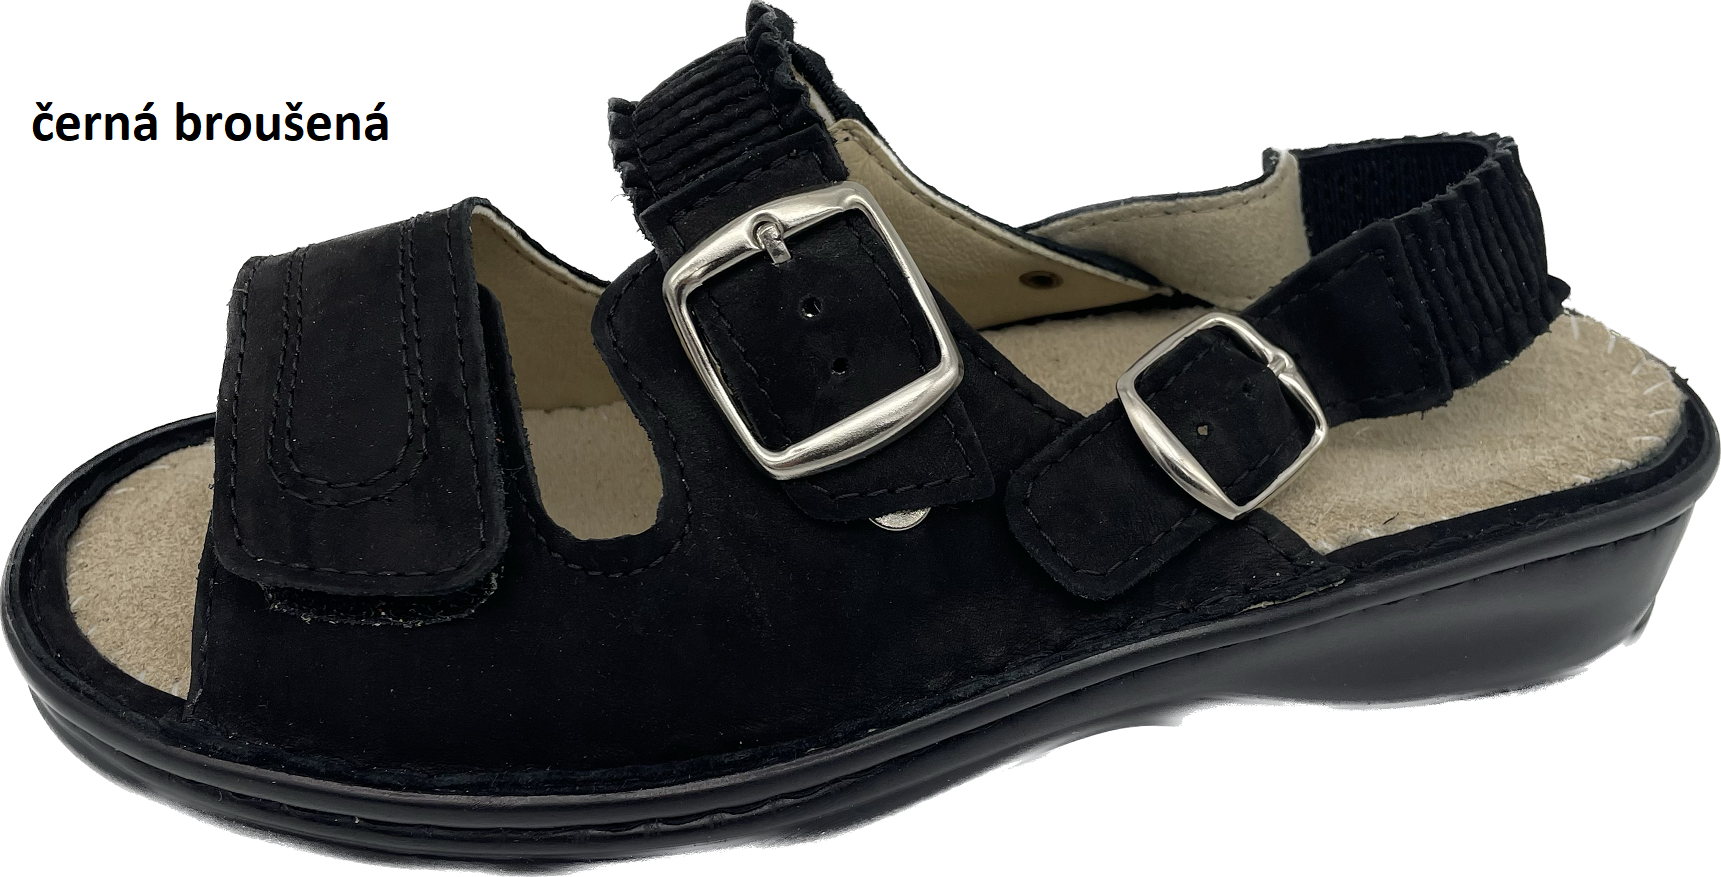 Boty Hanák vzor 305 P - černá podešev Barva usně: černá broušená, Velikosti obuvi: 35